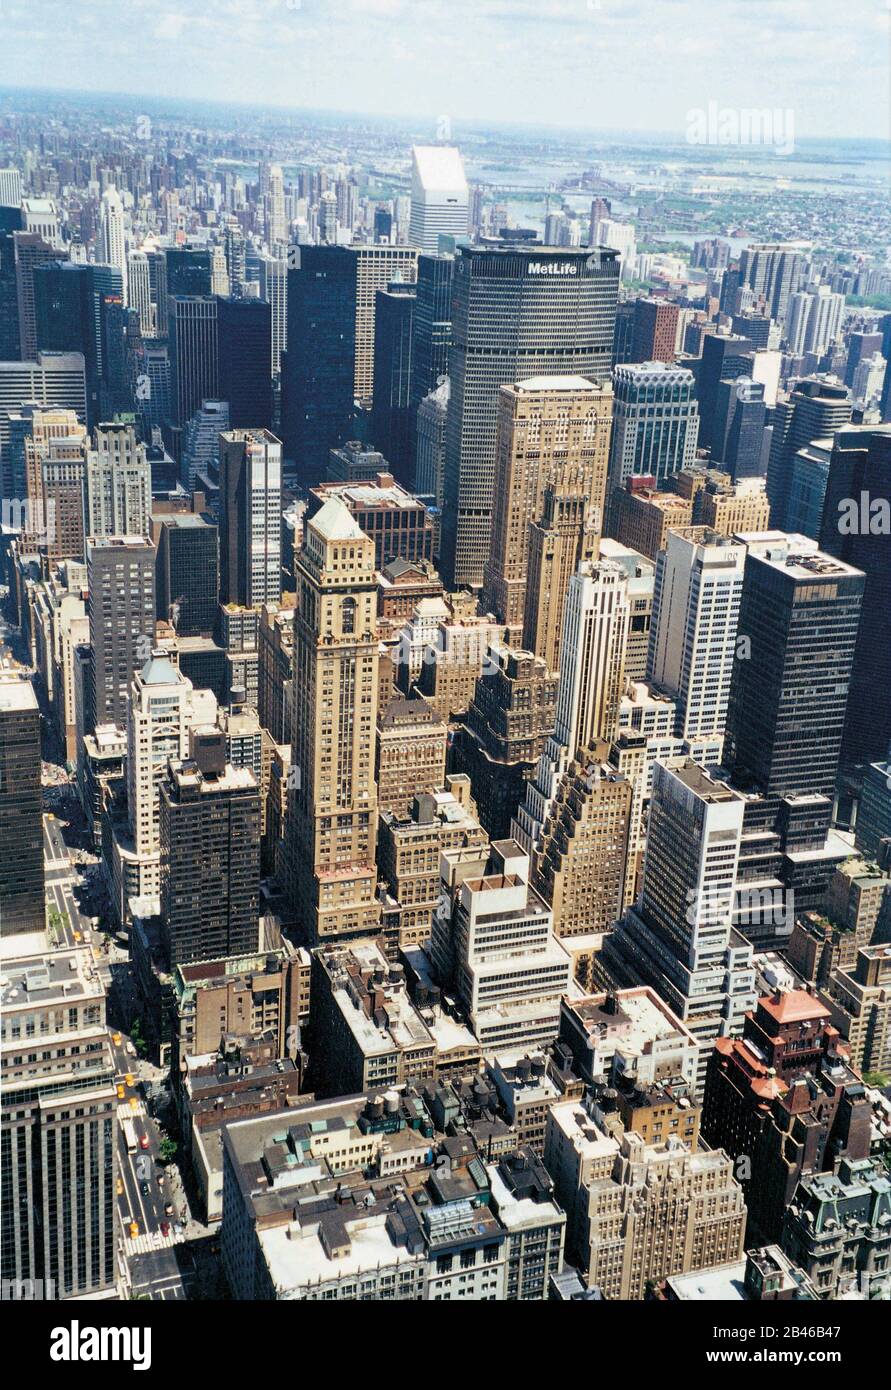 New York City, Creation of Man, MetLife Building, Stati Uniti d'America, USA, 1999, vecchia immagine del 1900 Foto Stock